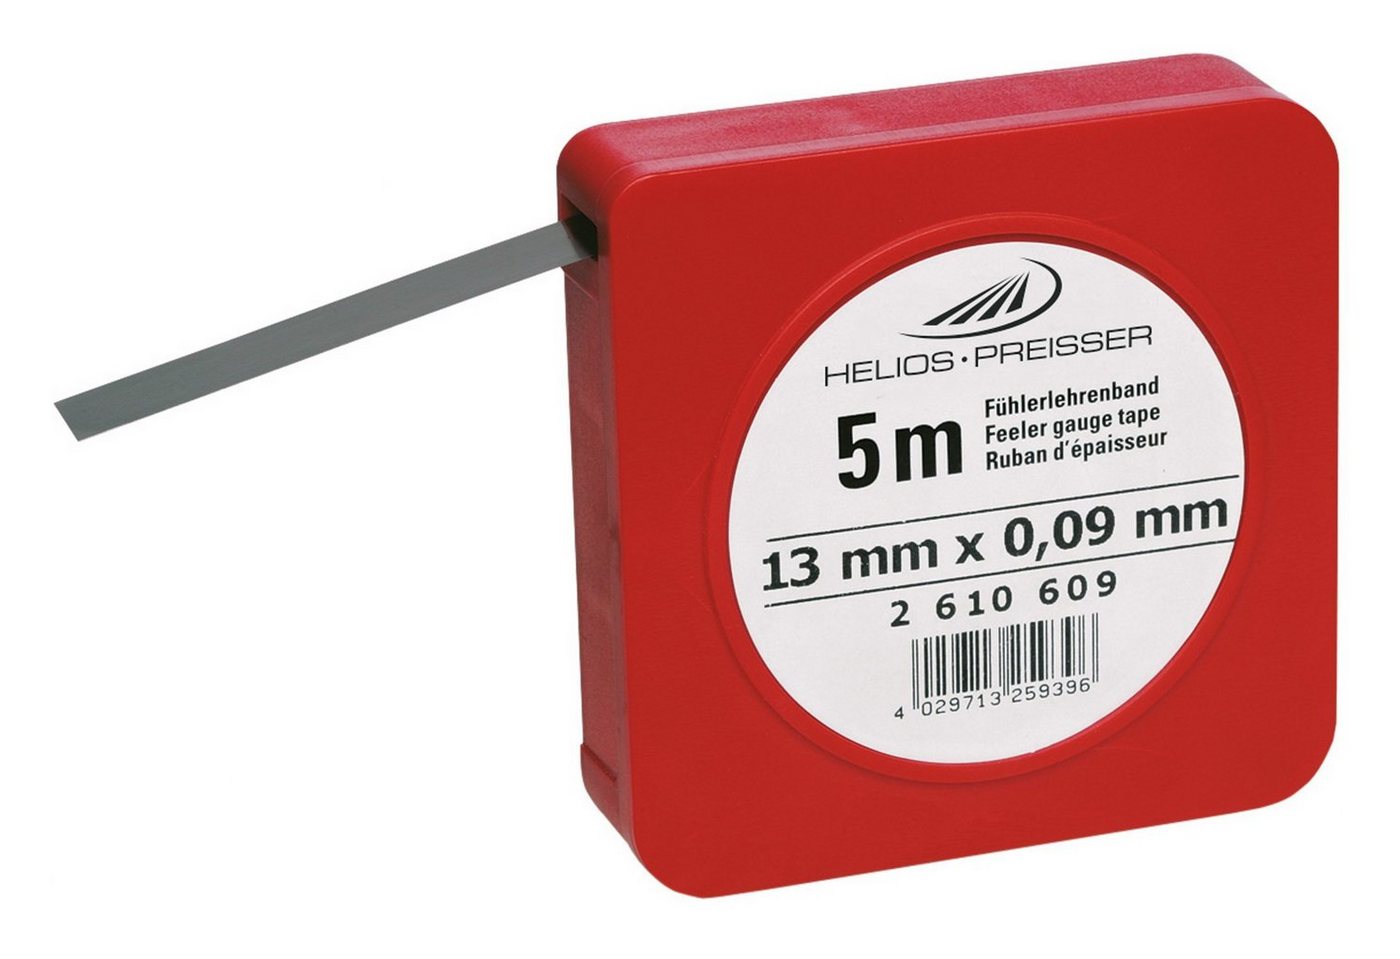 HELIOS PREISSER Fühlerlehre, Fühlerlehrenband 0,02 mm von HELIOS PREISSER